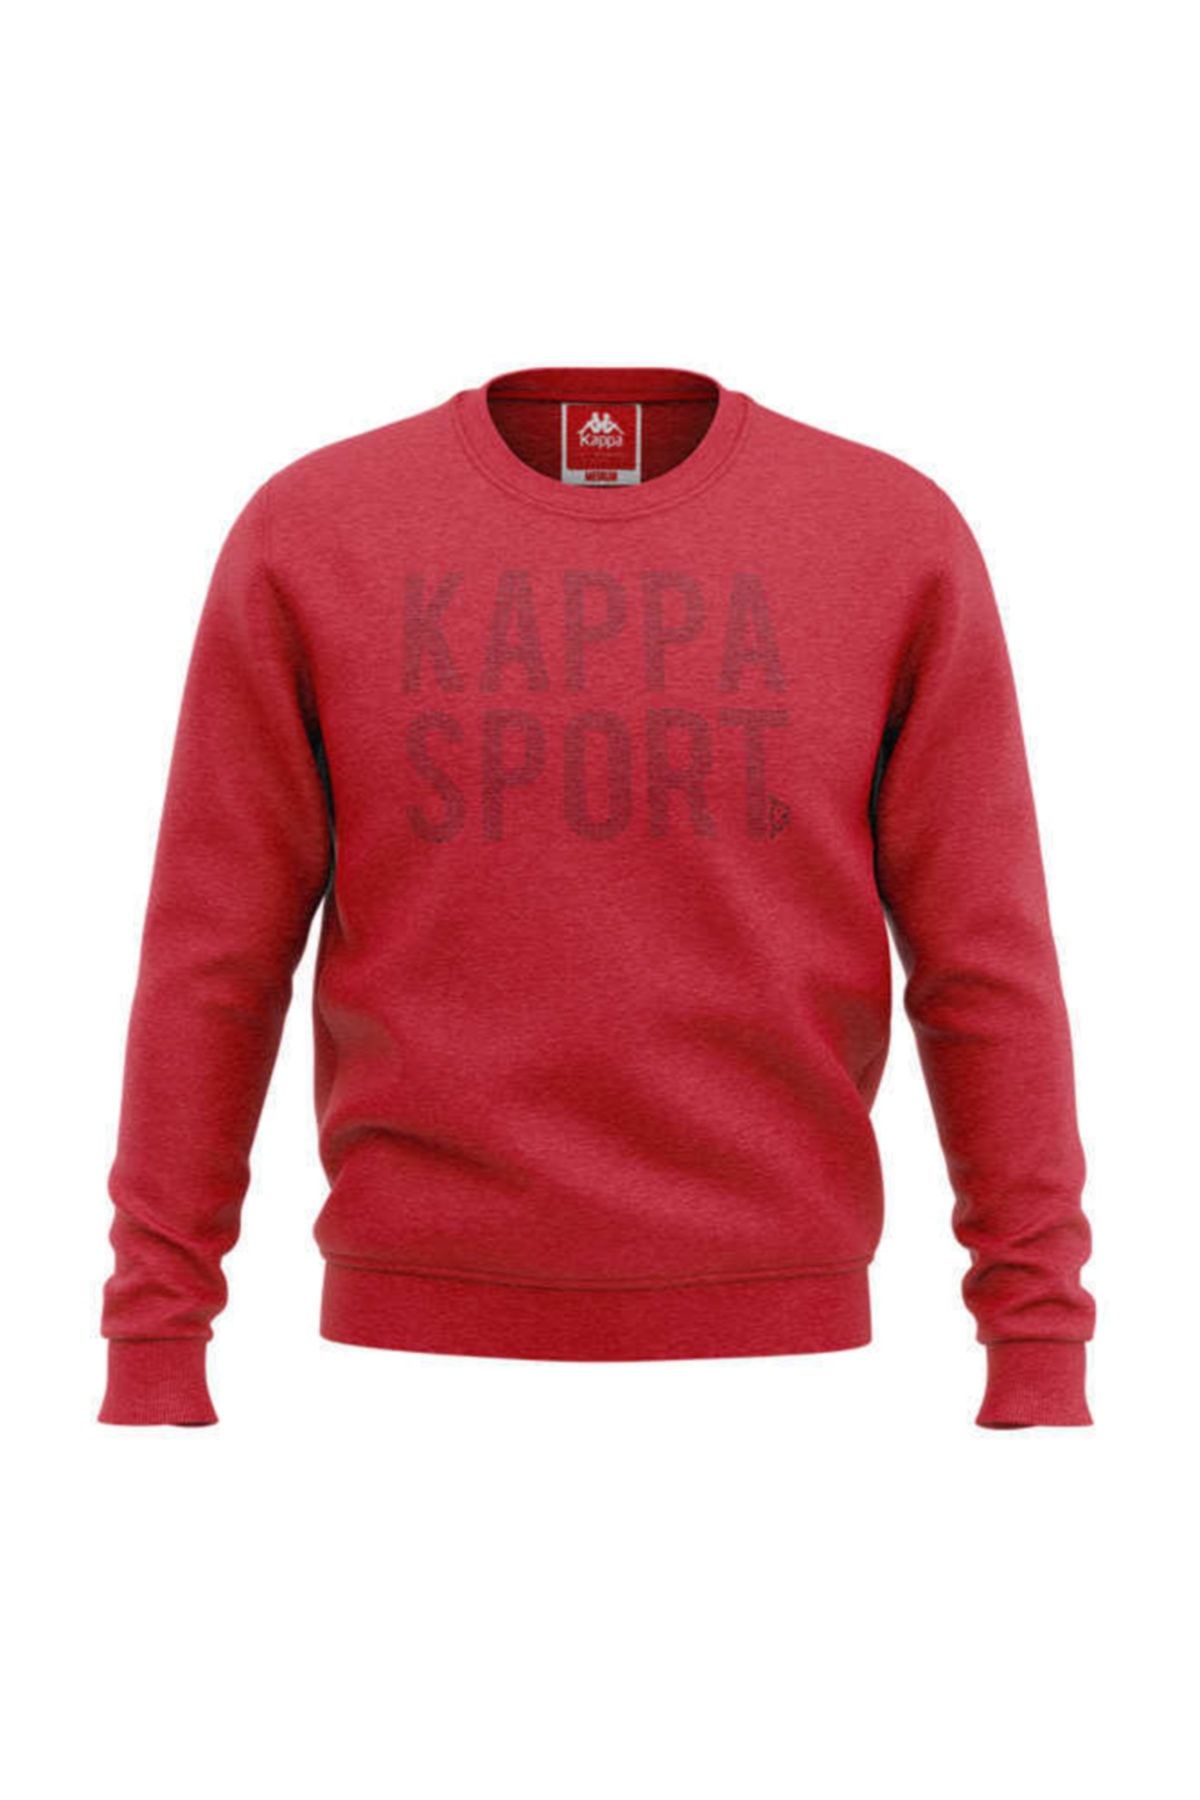 Kappa Erkek Kırmızı Sweatshirt